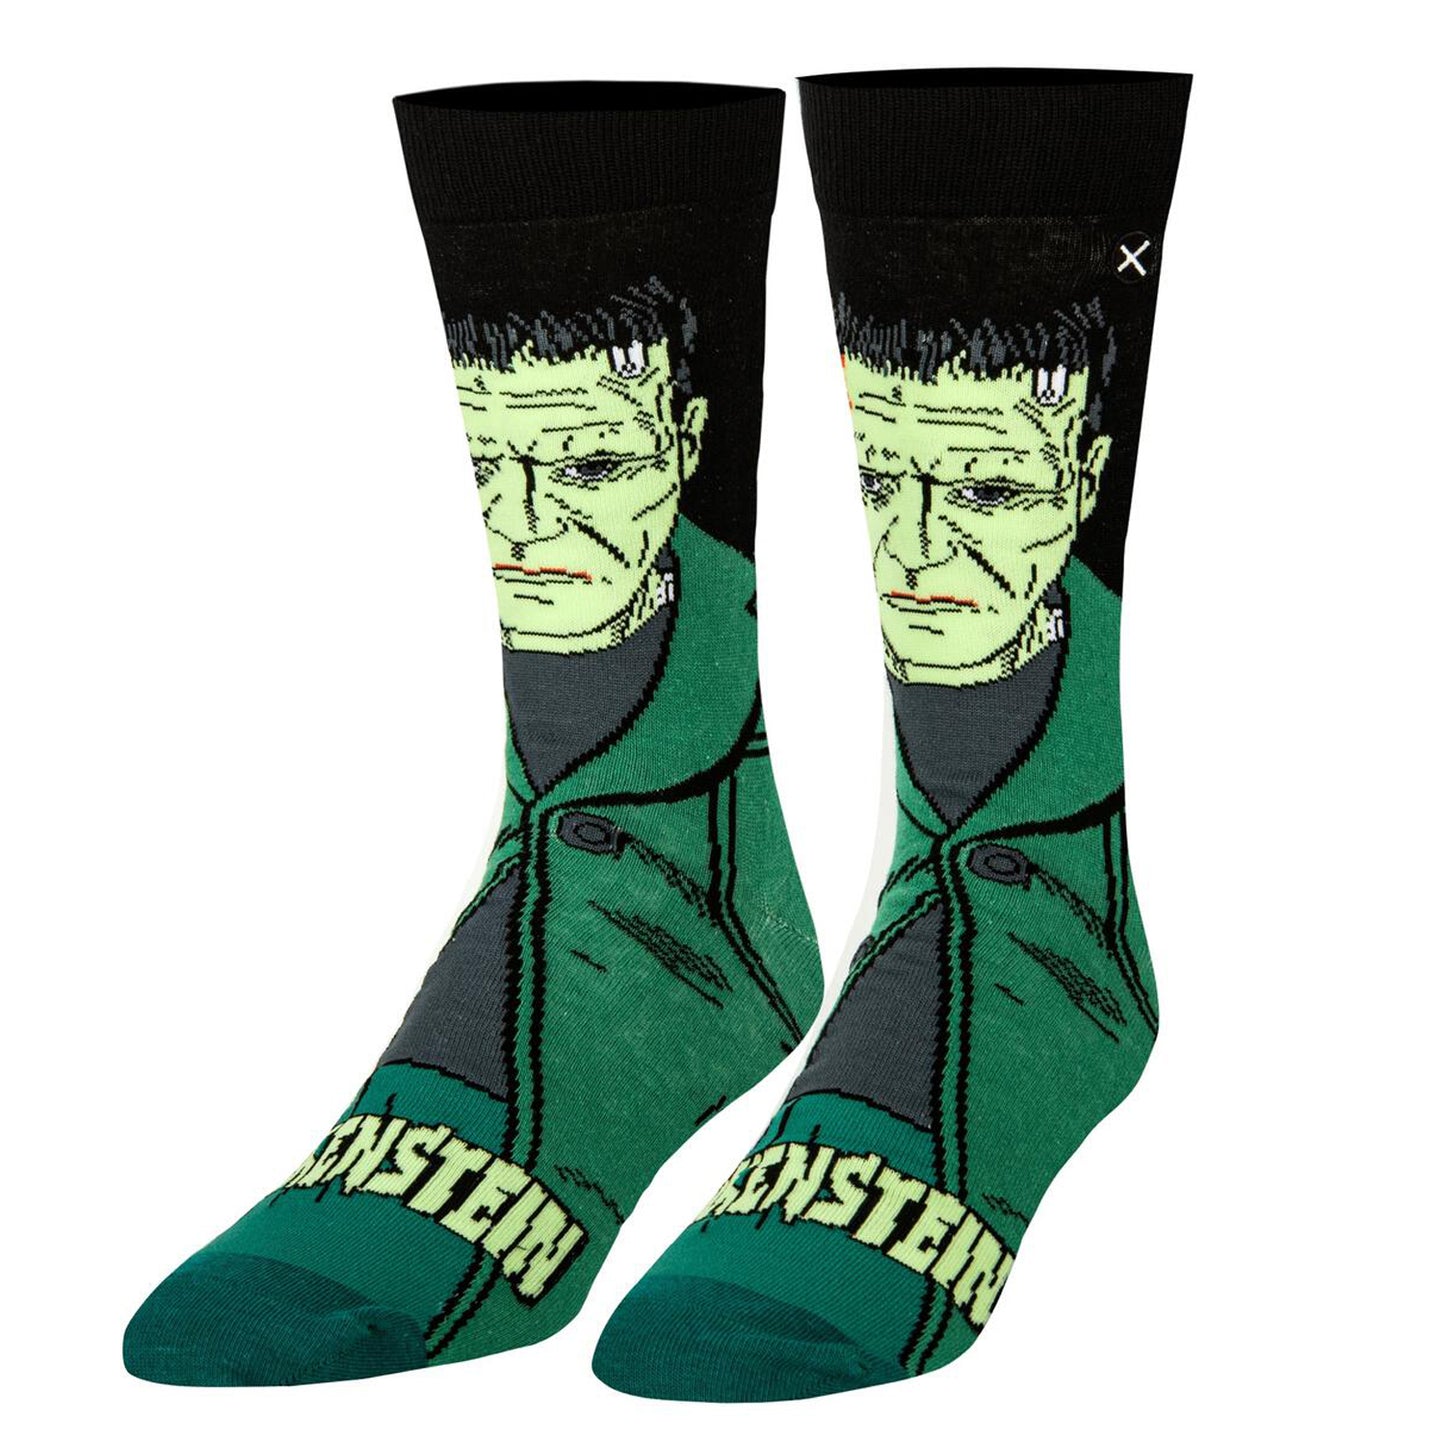 Odd Sox Men's Crew Socks - Frankenstein (Universal Monsters)